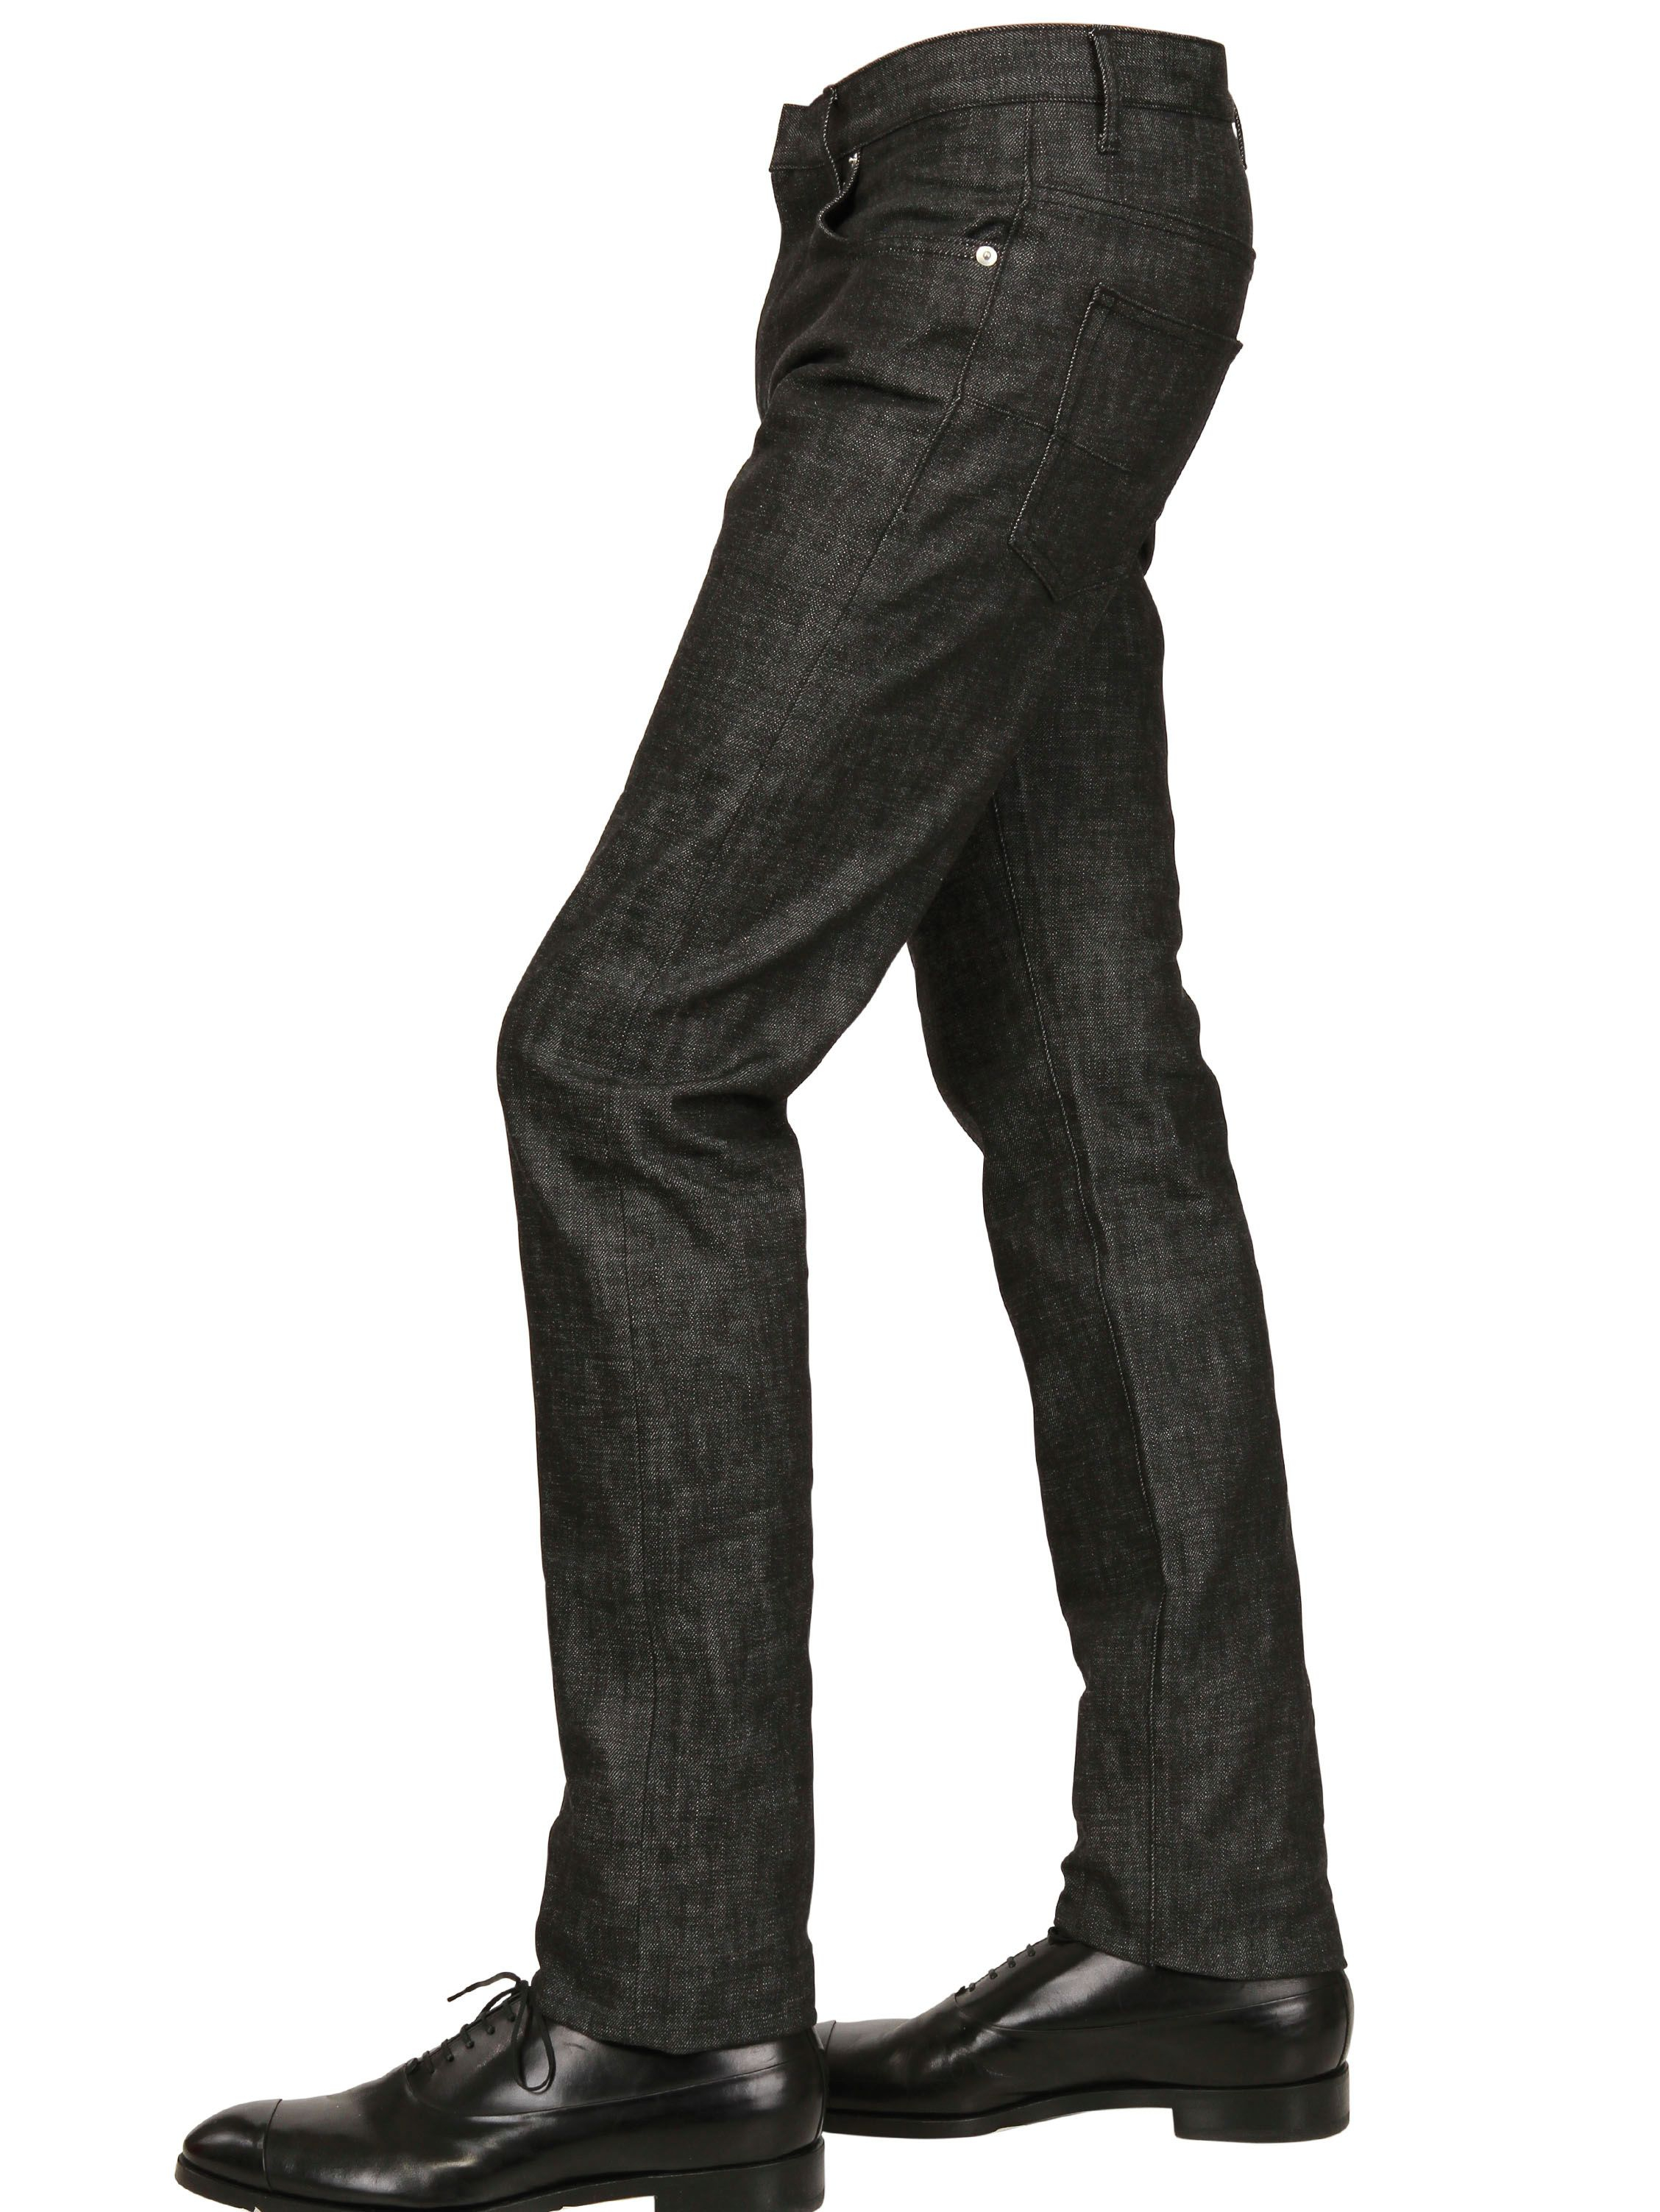 Lyst - Dior homme 19cm Brut Denim Jeans in Black for Men